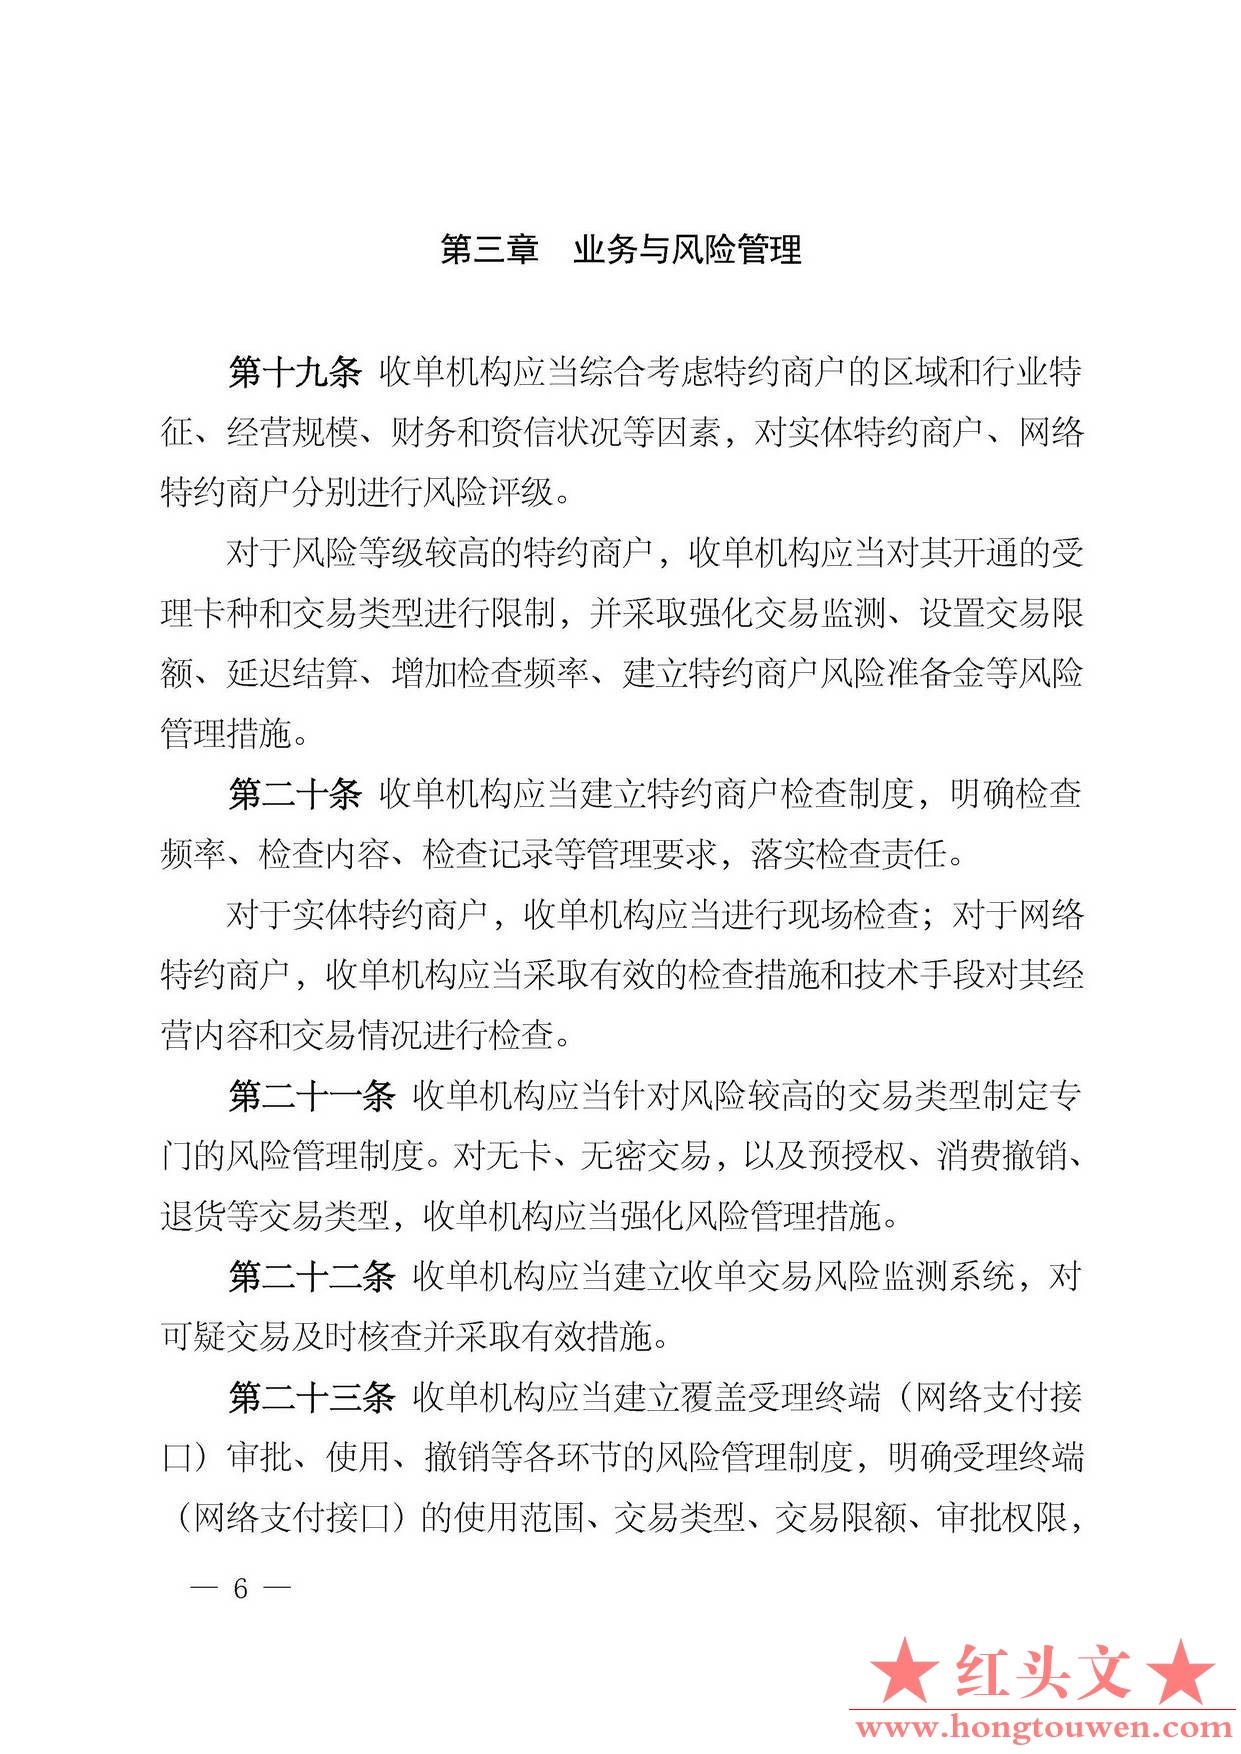 中国人民银行公告[2013]第9号-银行卡收单业务管理办法_页面_06.jpg